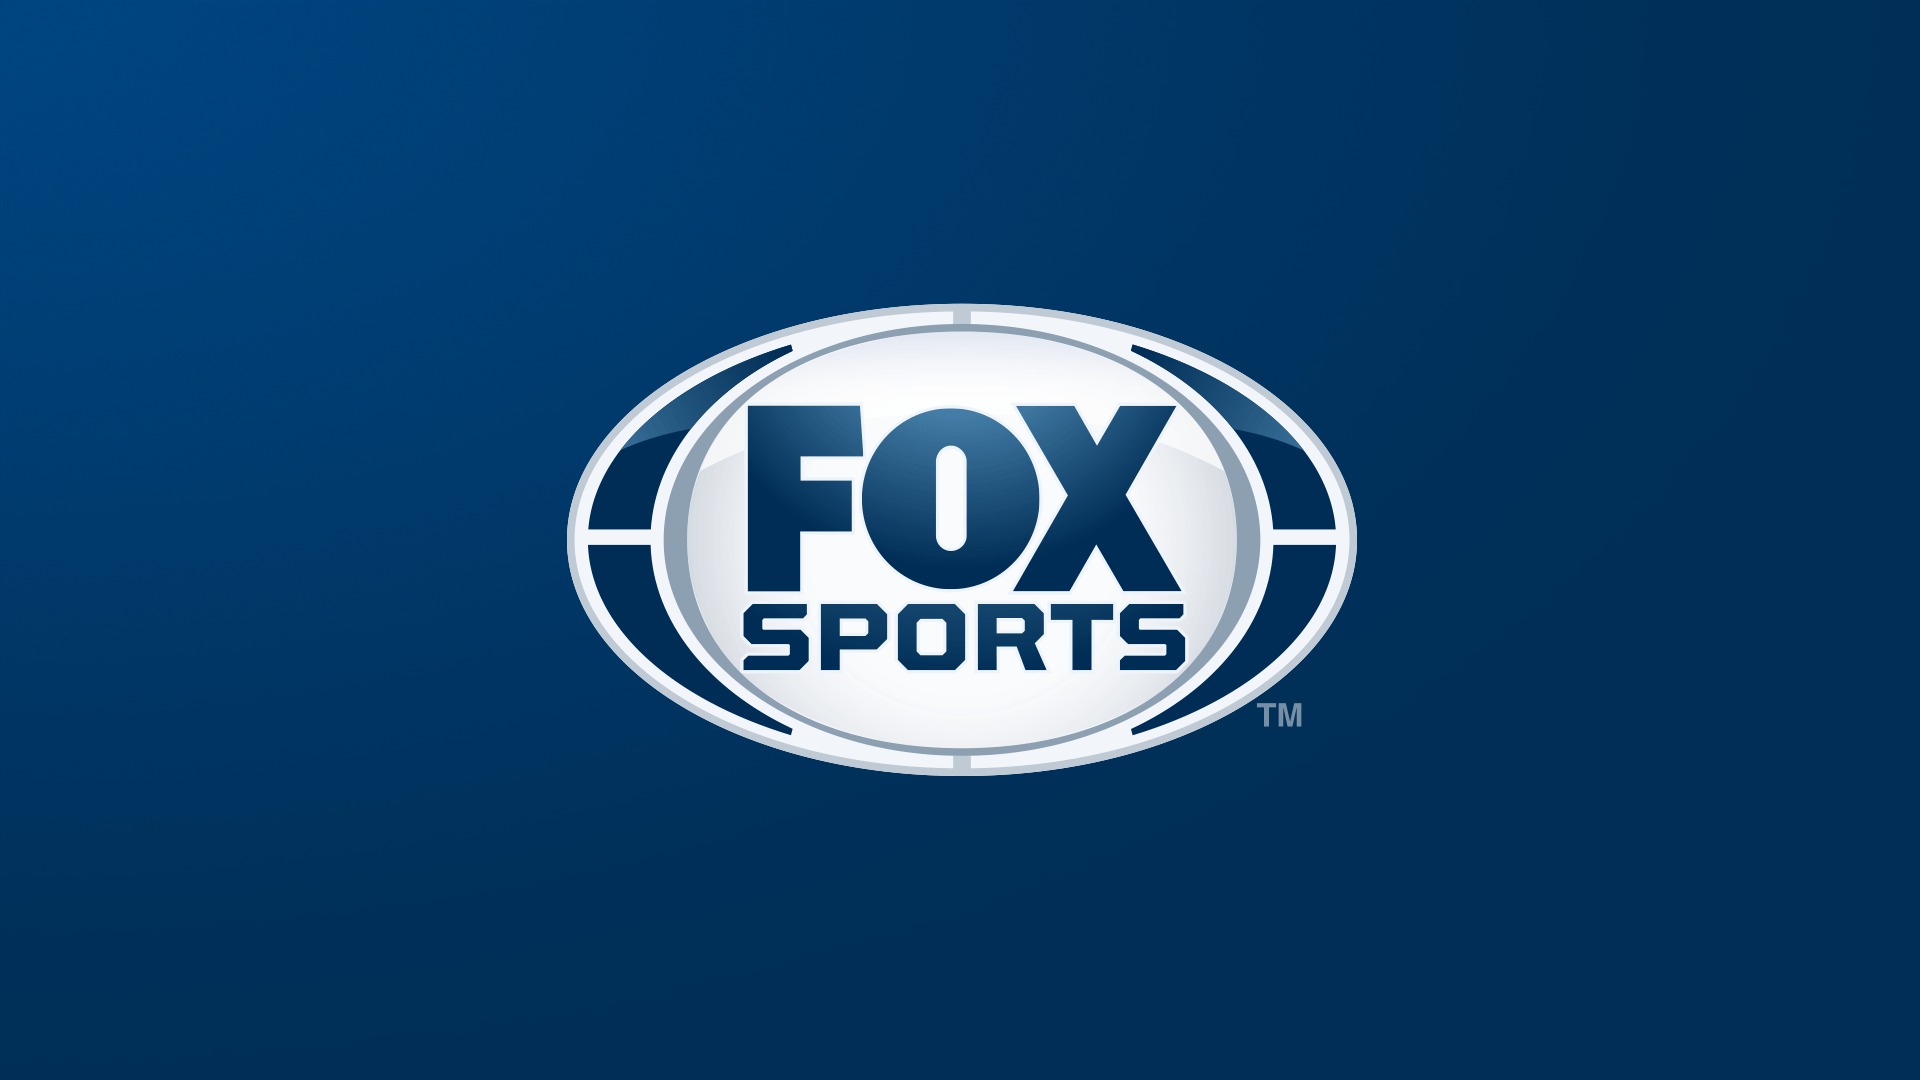 Fox Sports decidiu transmitir eventos esportivos virtuais